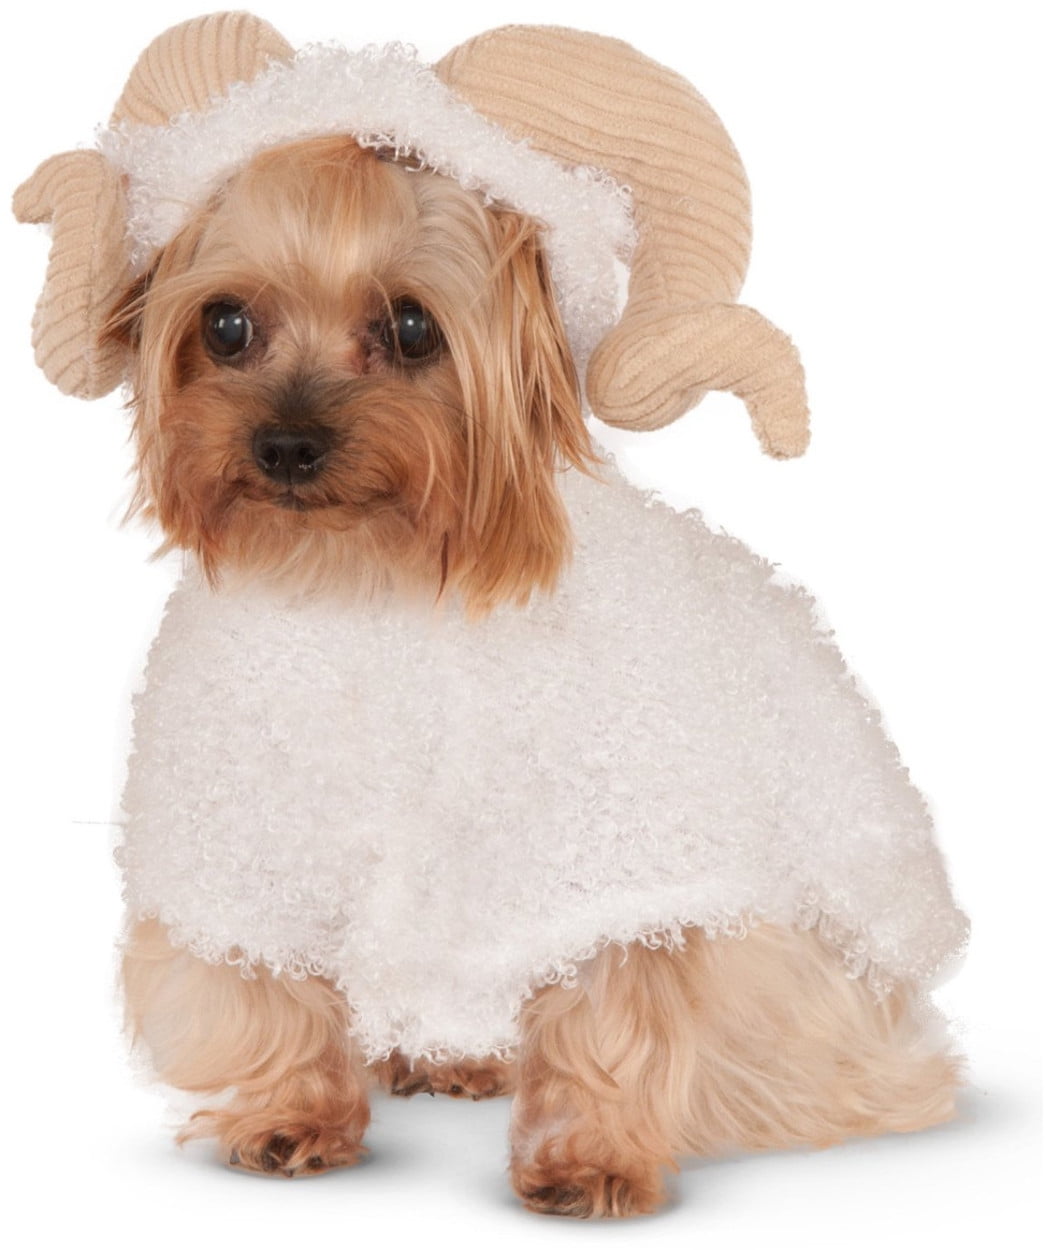 wind up dog costume